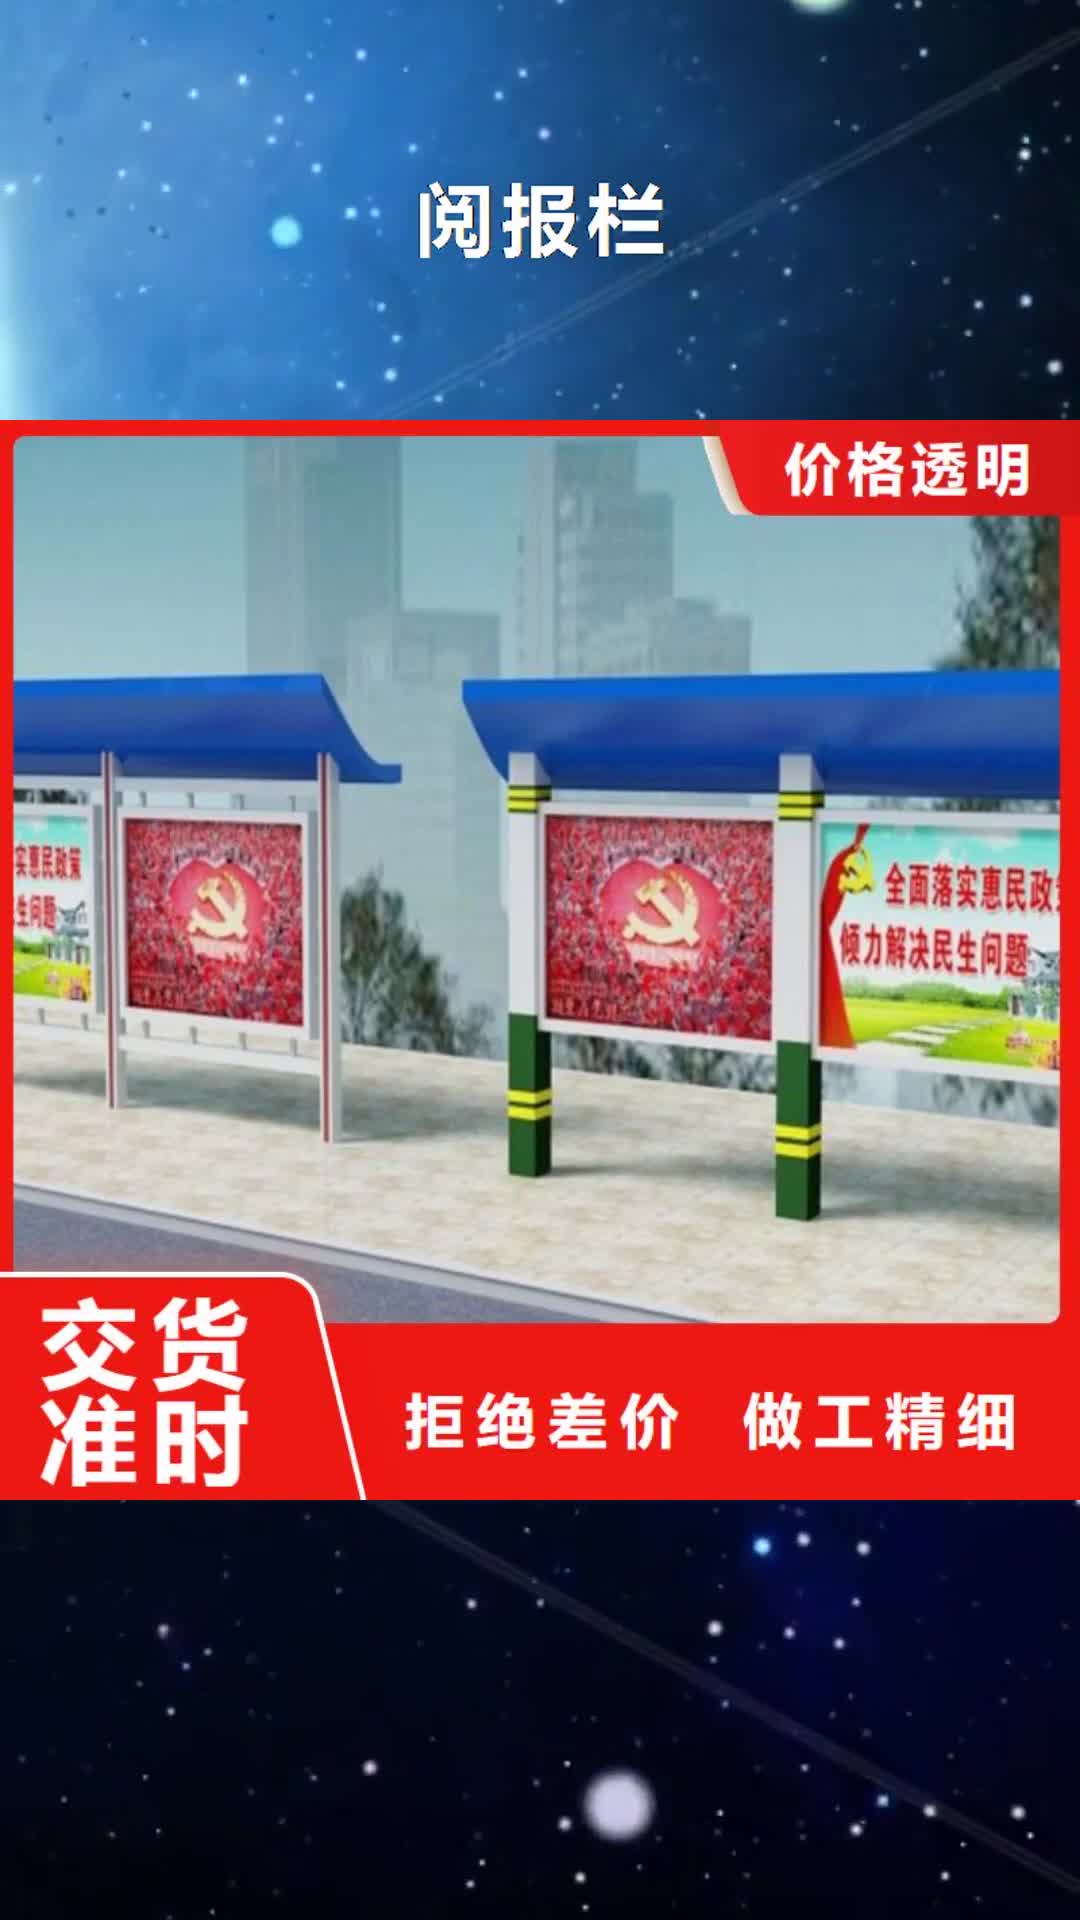 衢州【阅报栏】-不锈钢候车亭追求品质